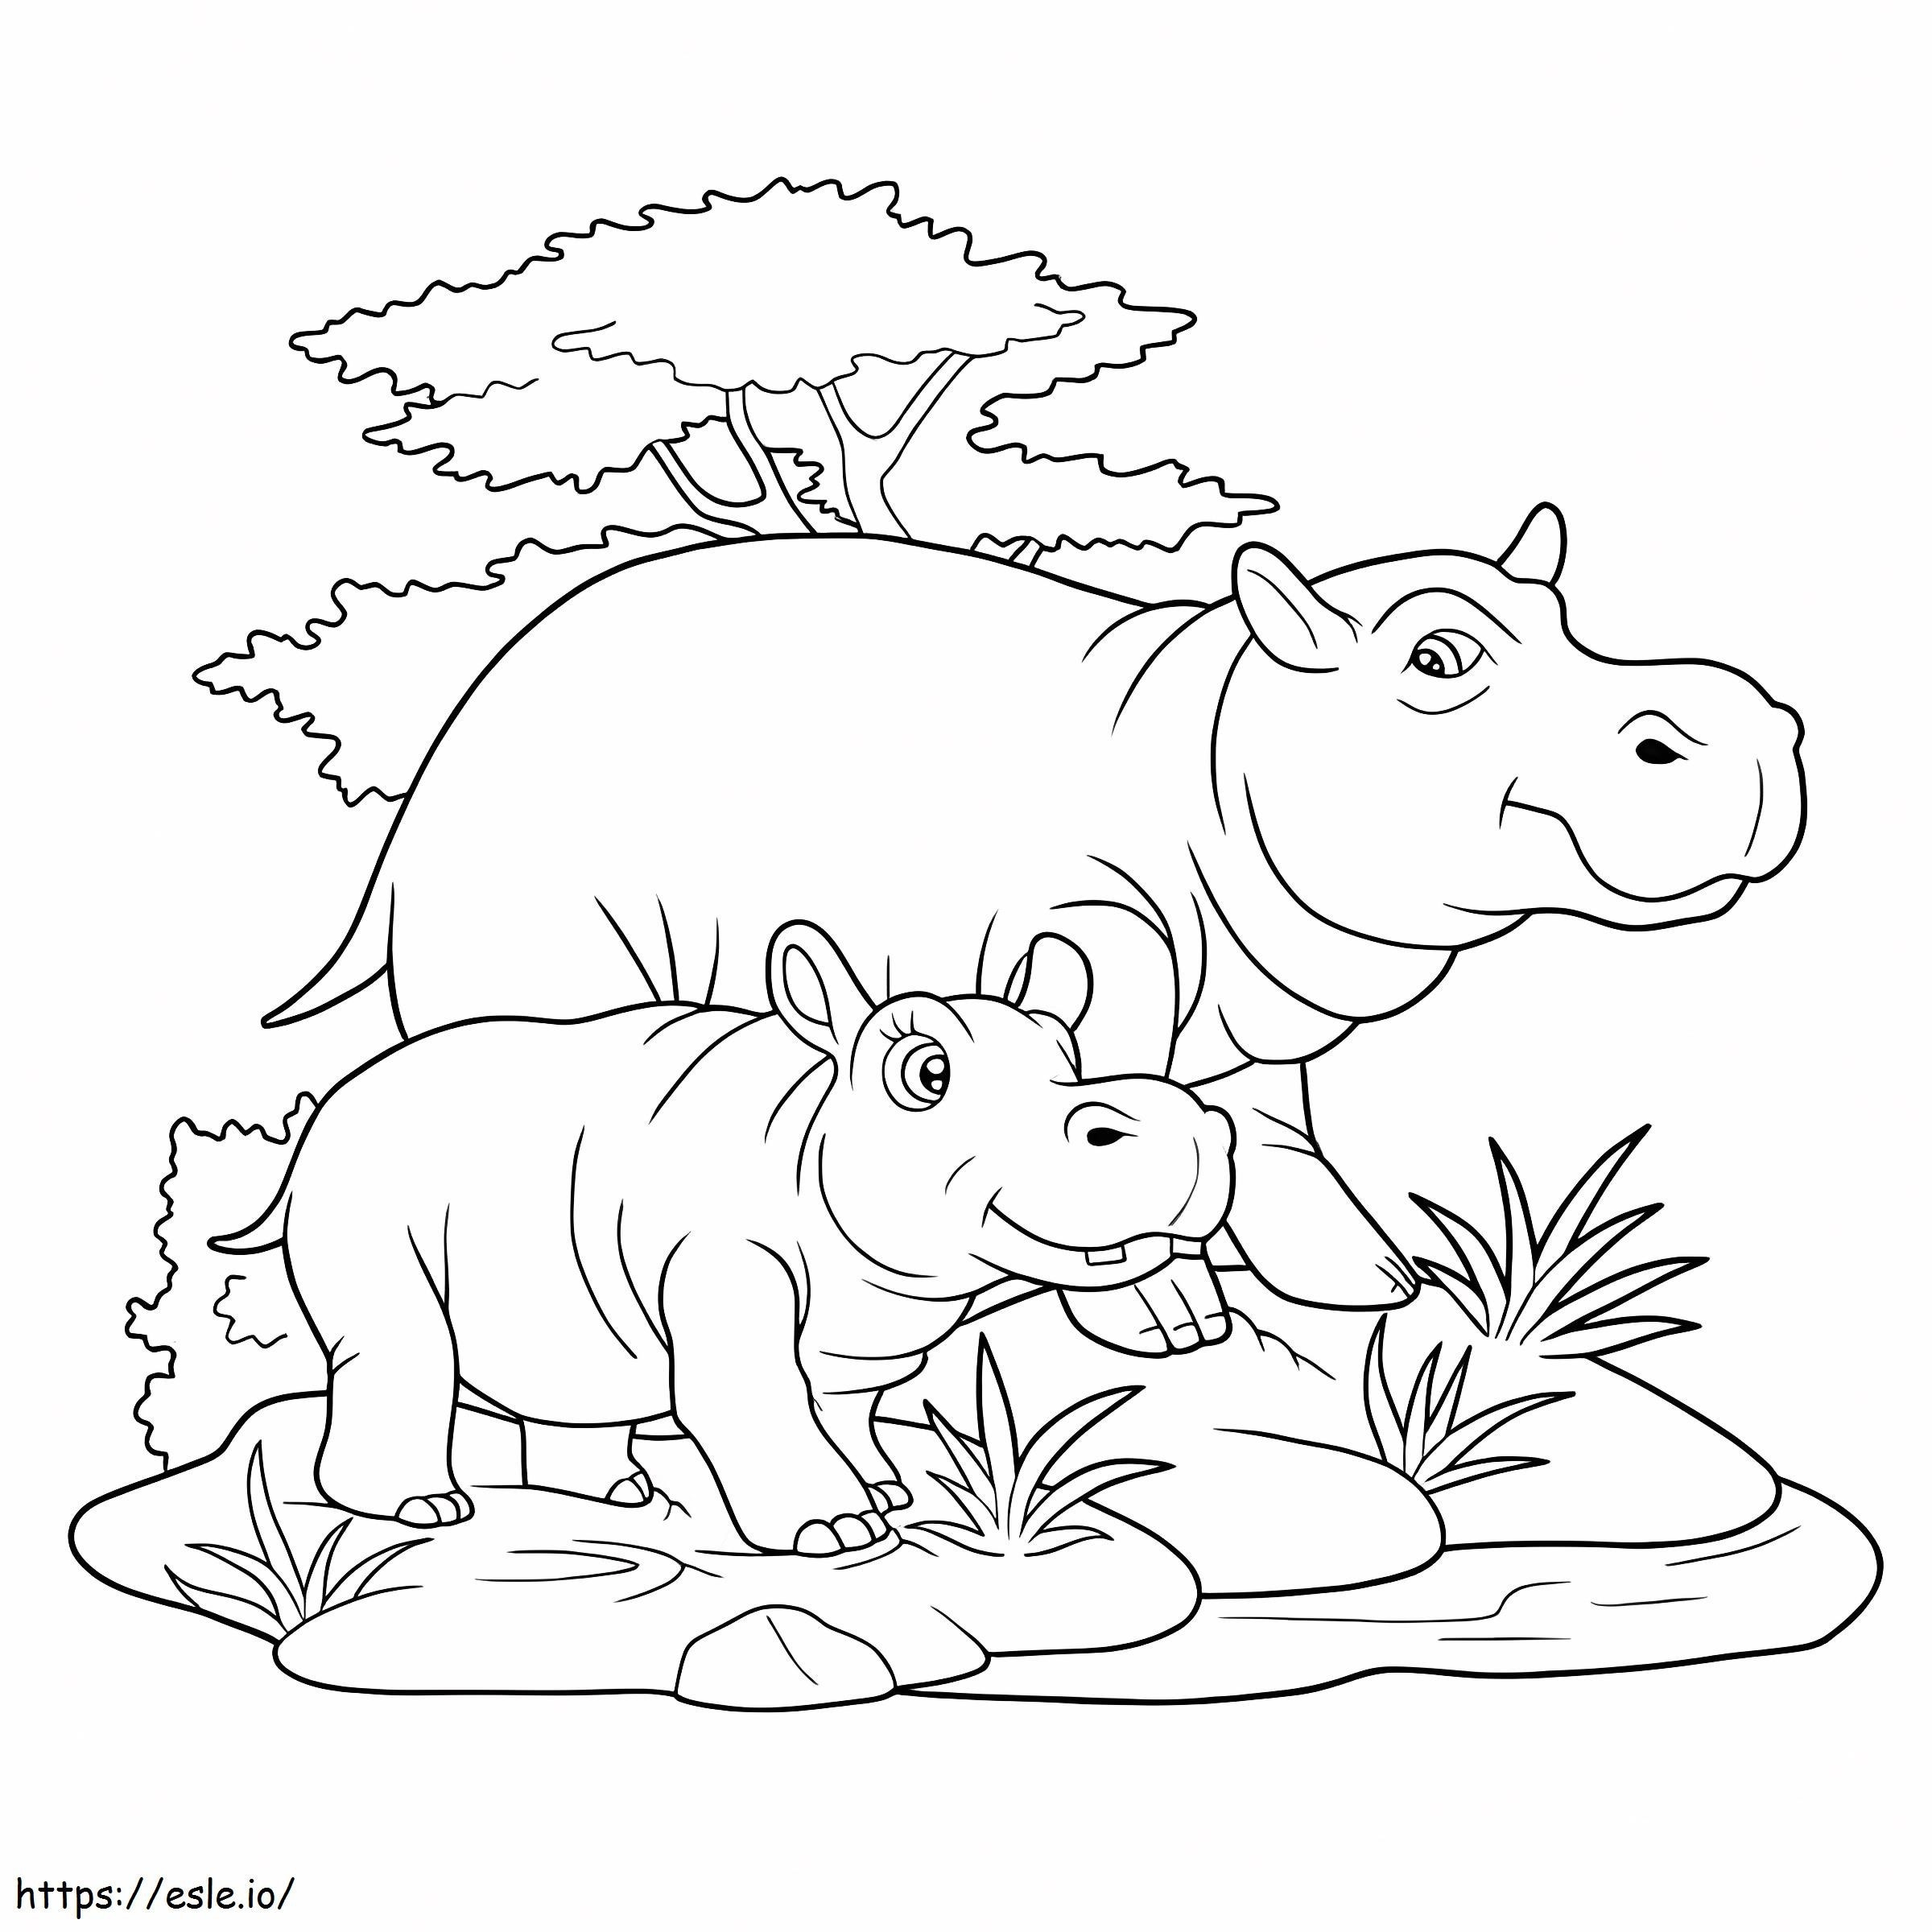 Hipopótamo básico madre y bebé hipopótamo para colorear